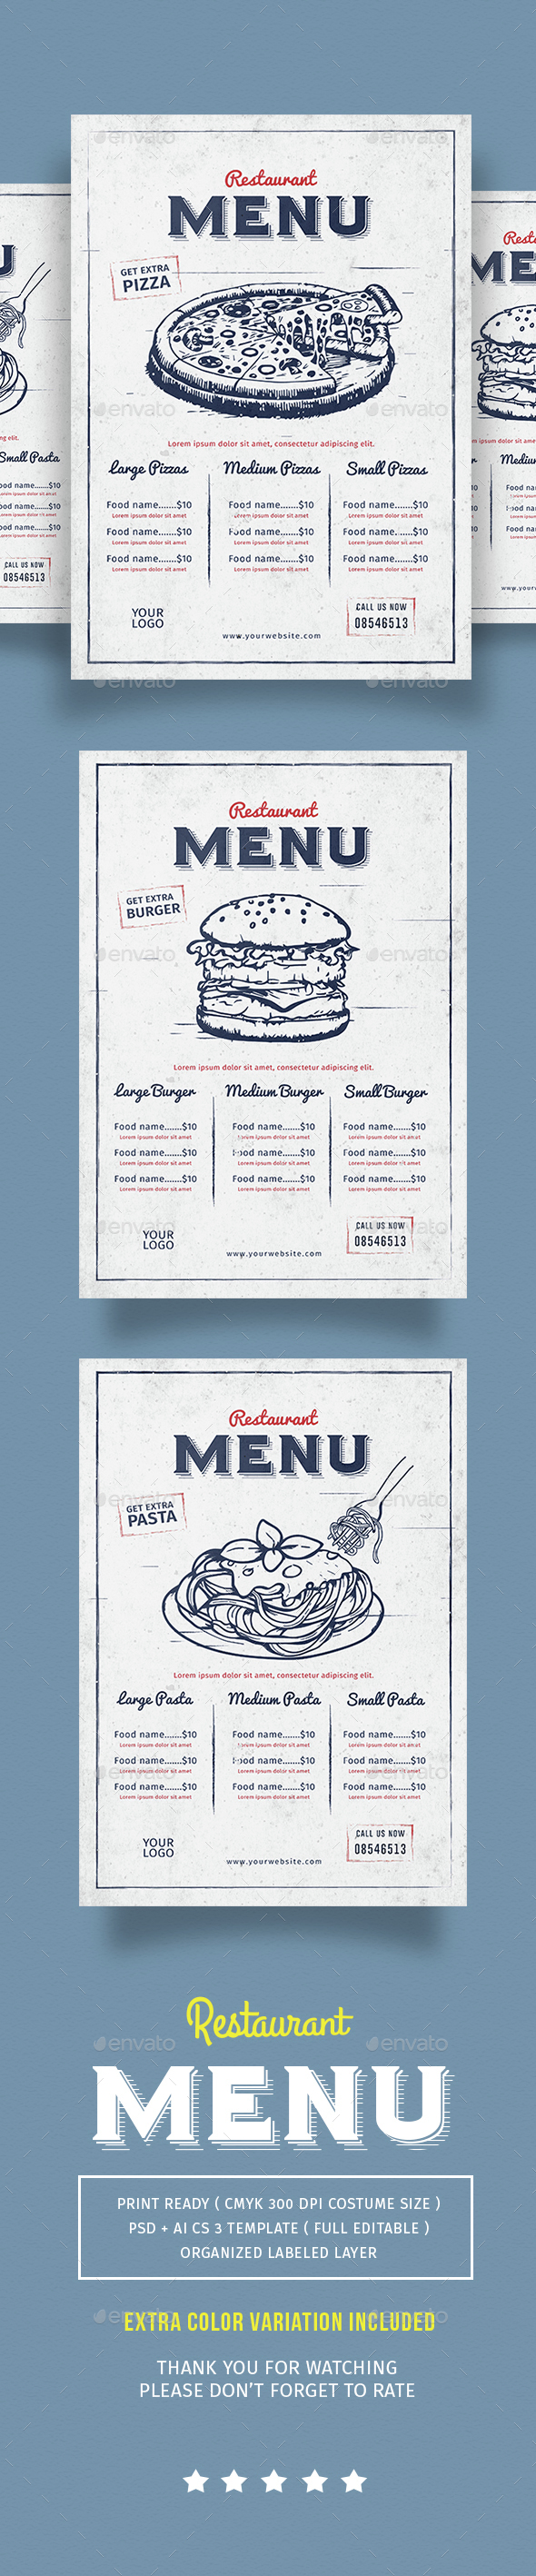 vintage restaurant menu design